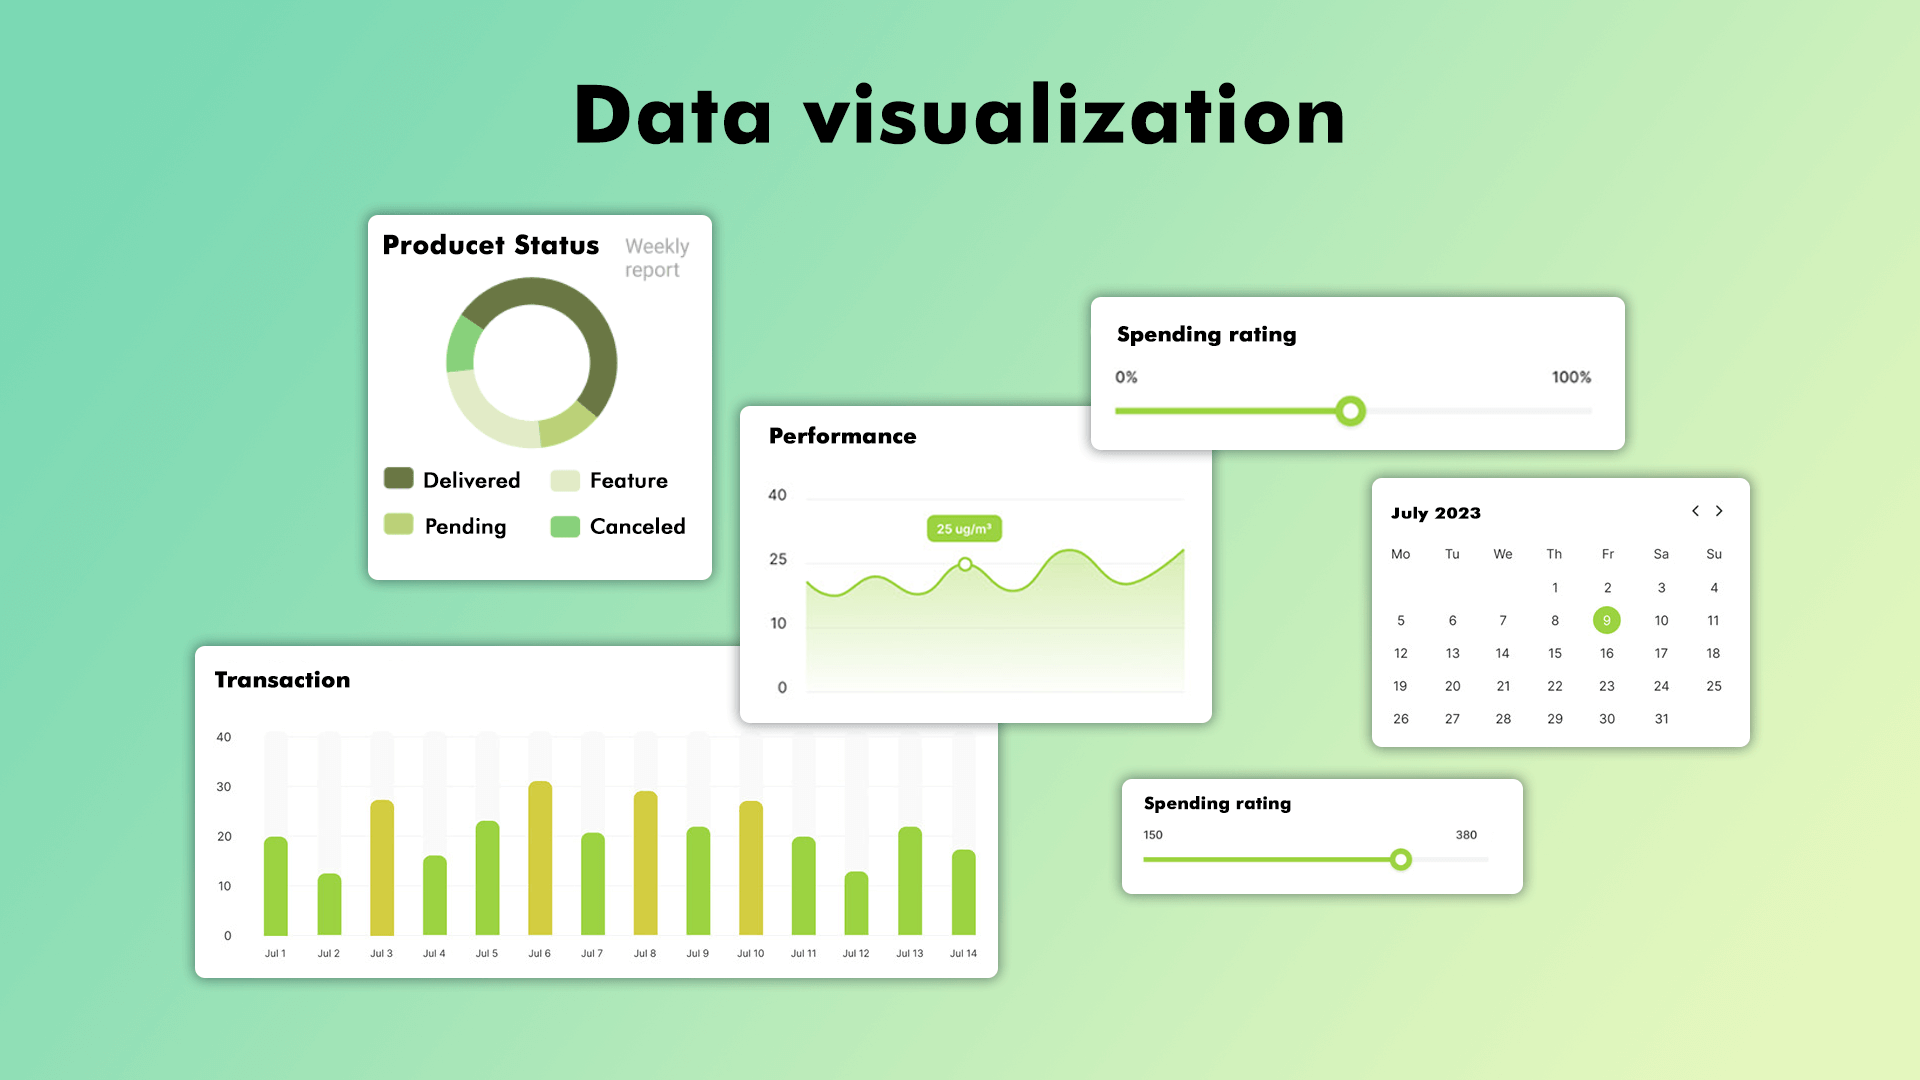 Data visualization